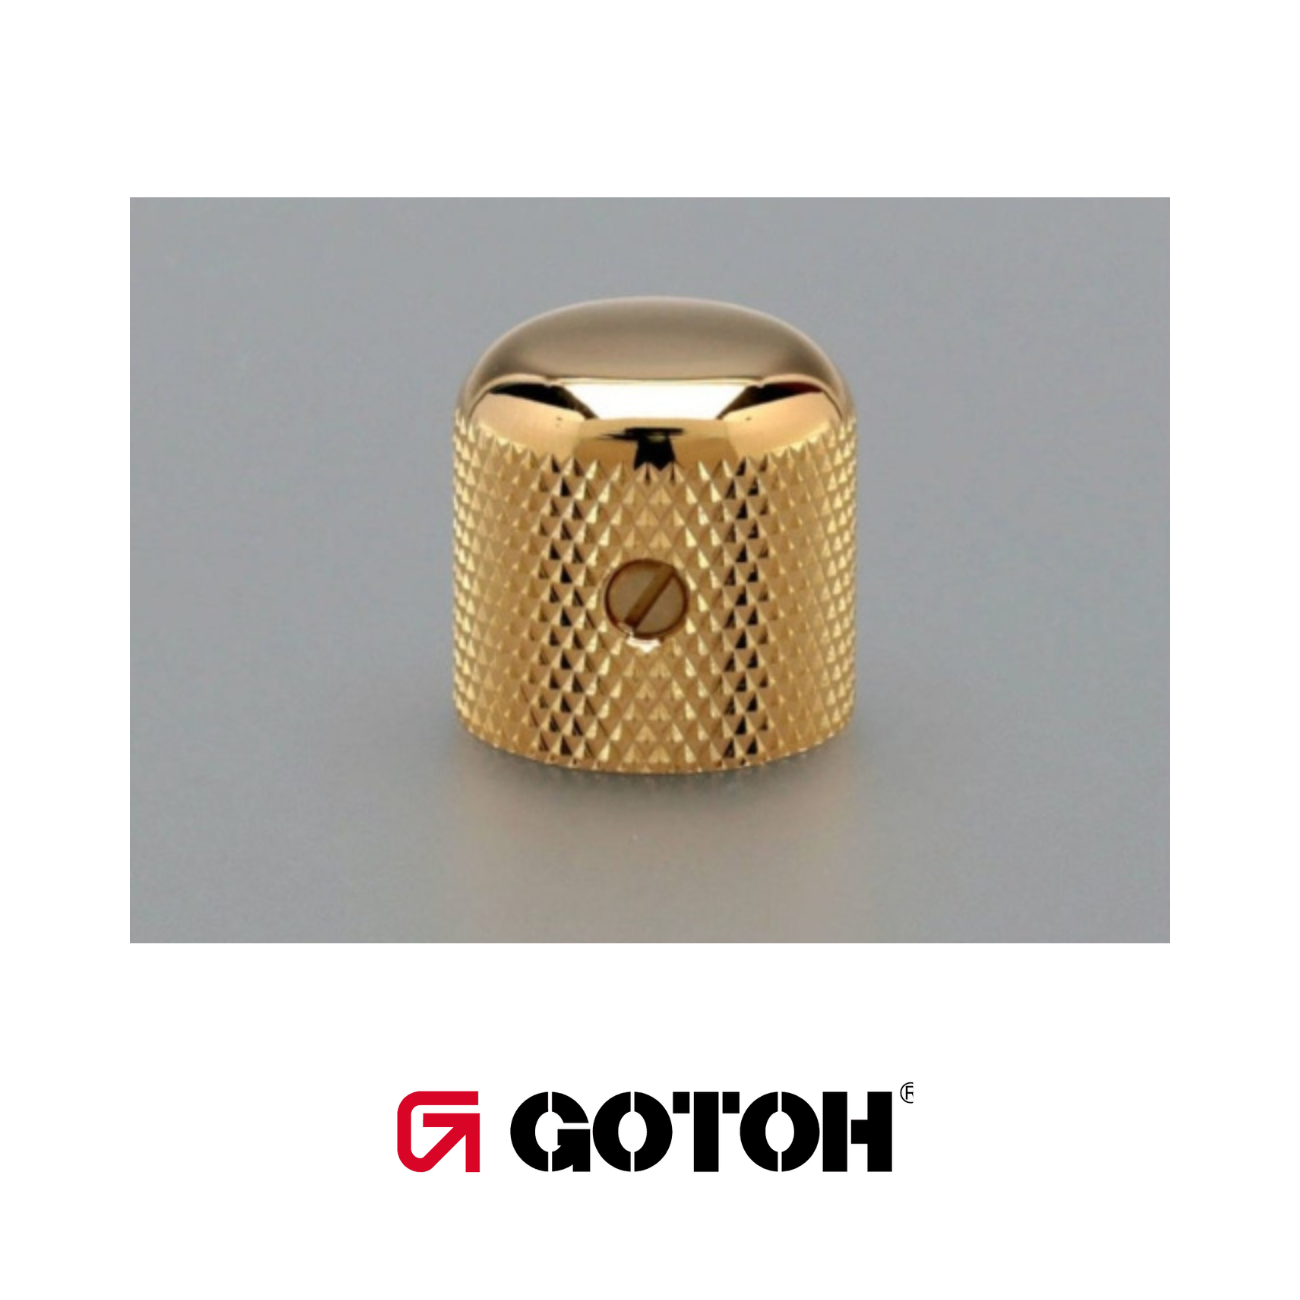 Gotoh VK1-18 Dome Knob | Gold